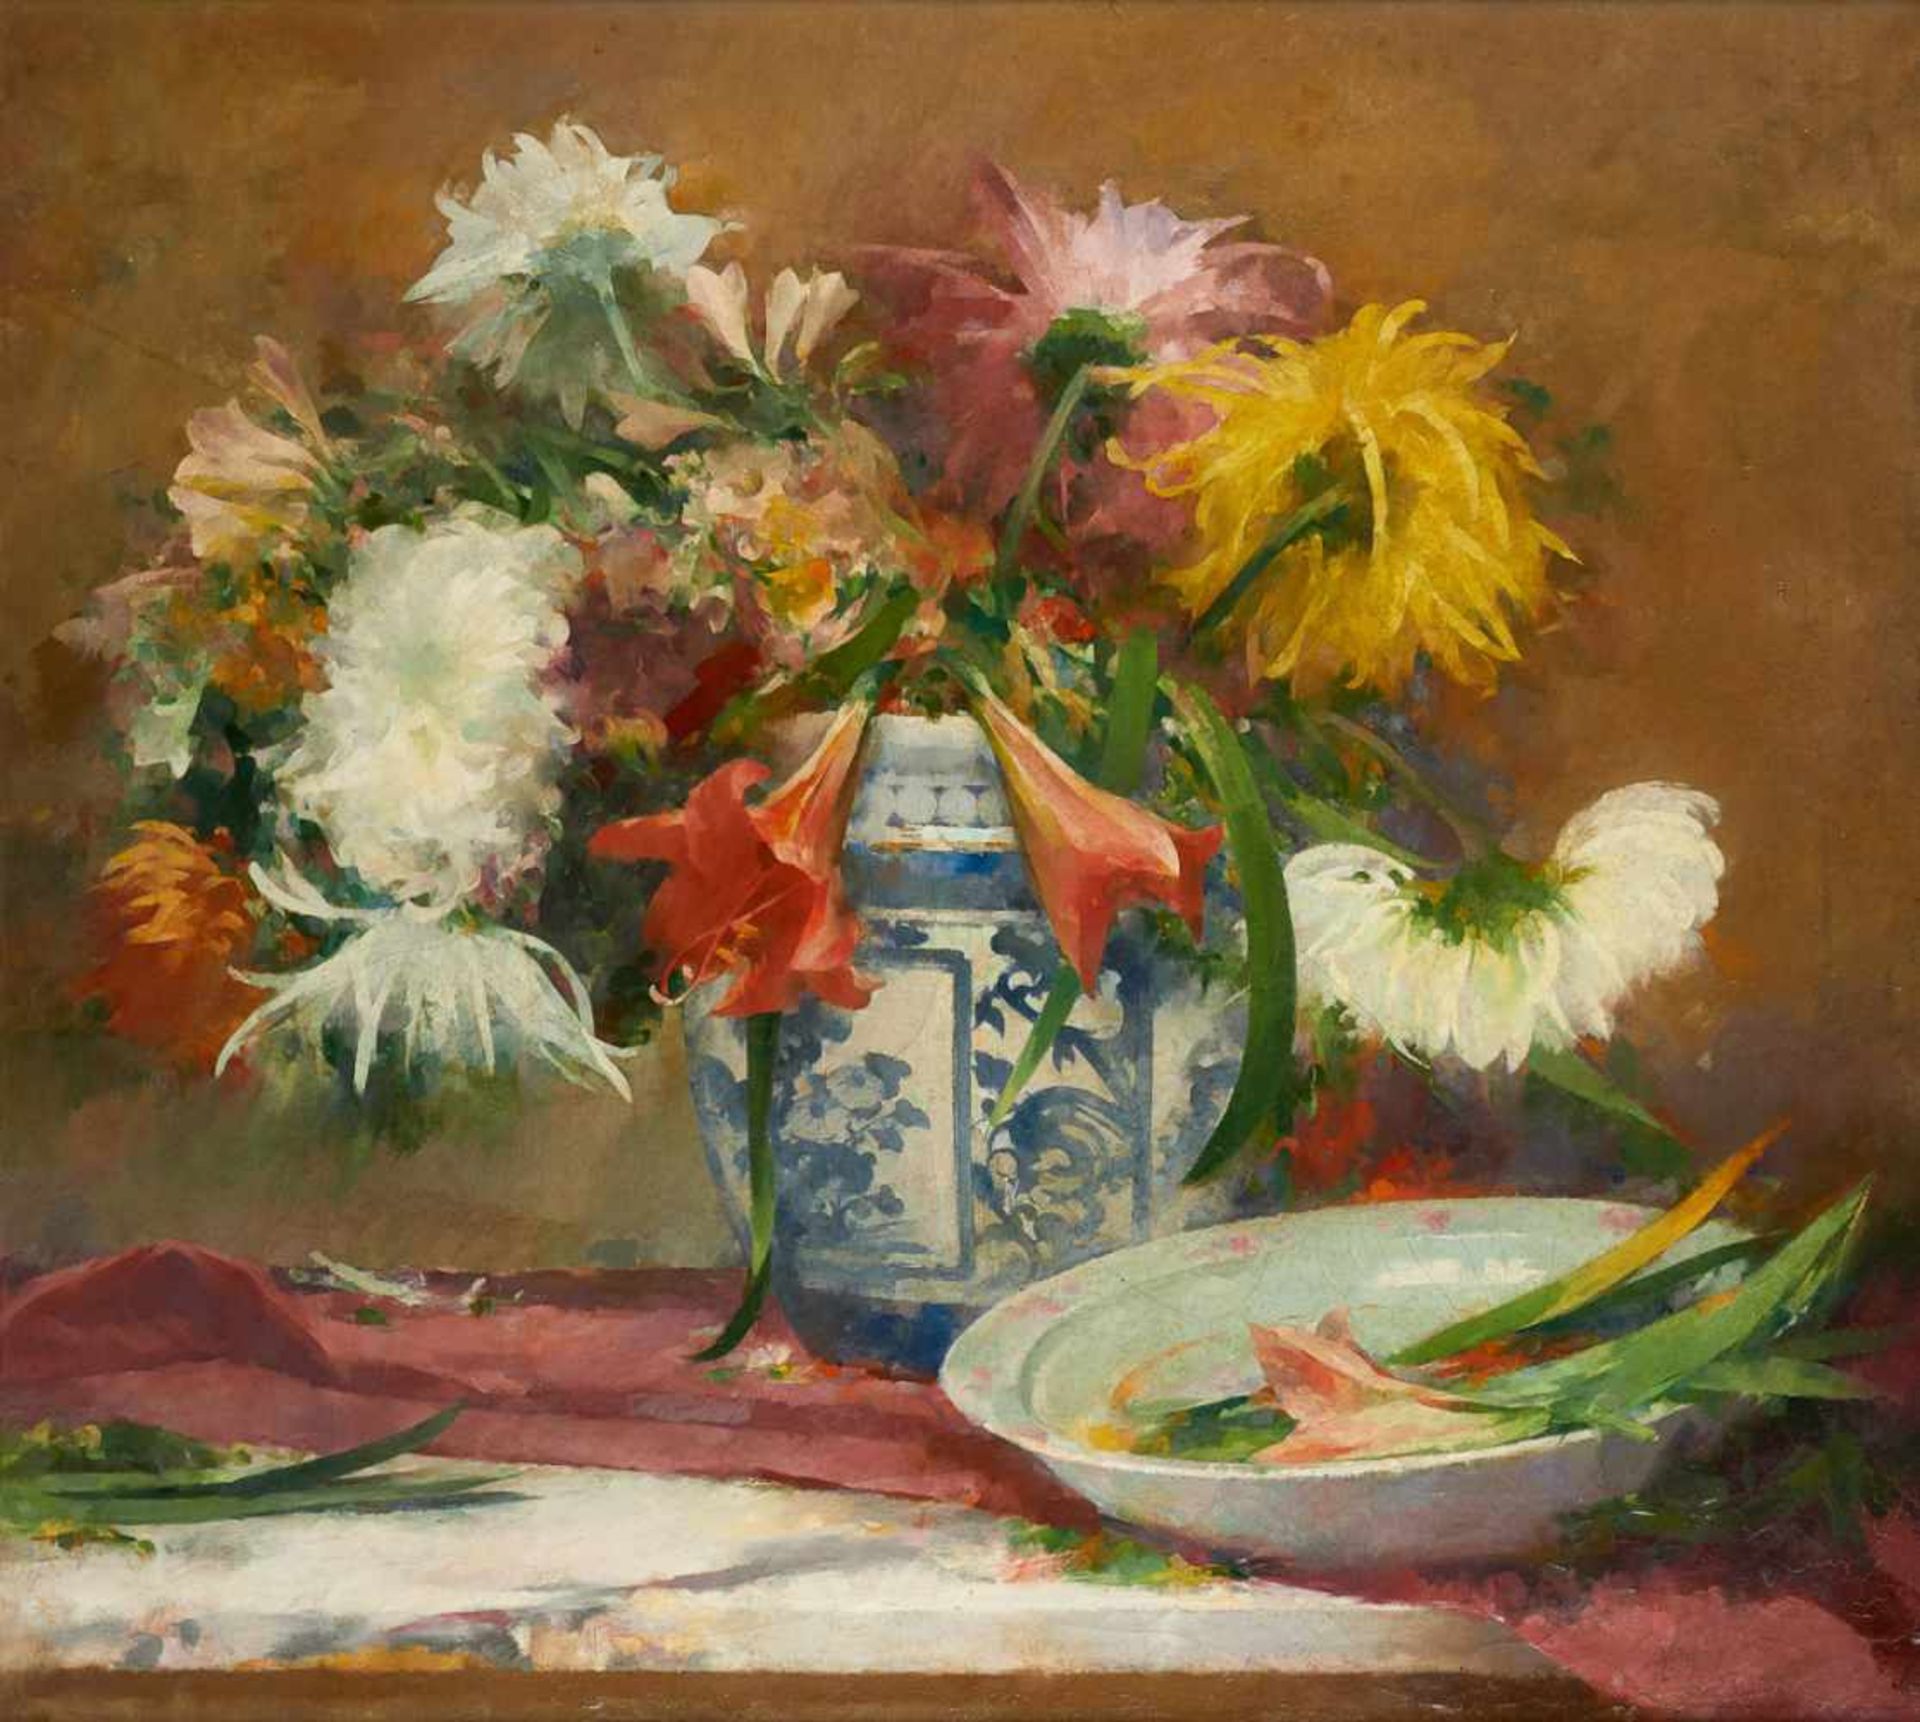 Franz SEGHERS École belge (1849-1939)Huile sur toile: Composition florale.Par Franz Seghers